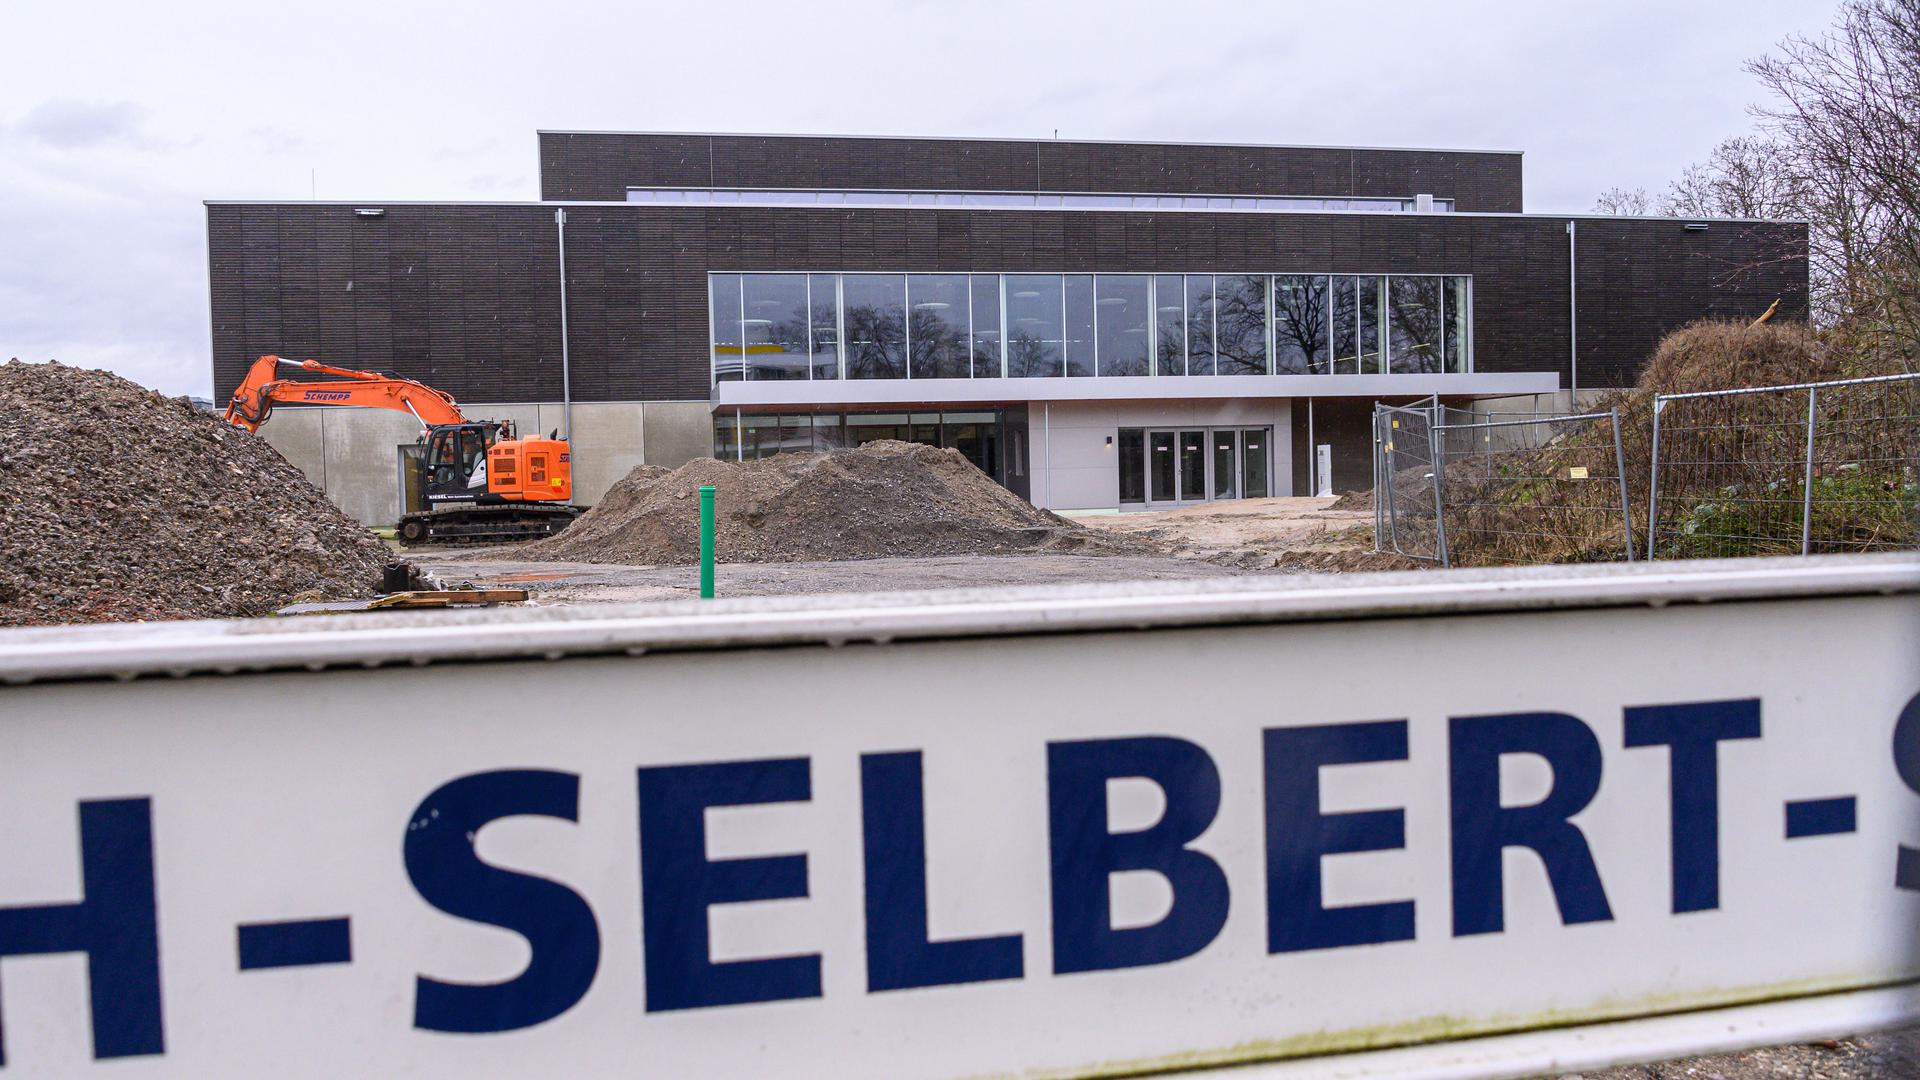 Aussenansicht der Bauarbeiten der Elisabeth-Selbert-Halle in Karlsruhe.

GES/ Sport allgemein/ Sportstaetten: Elisabeth-Selbert-Halle, 03.02.2021

